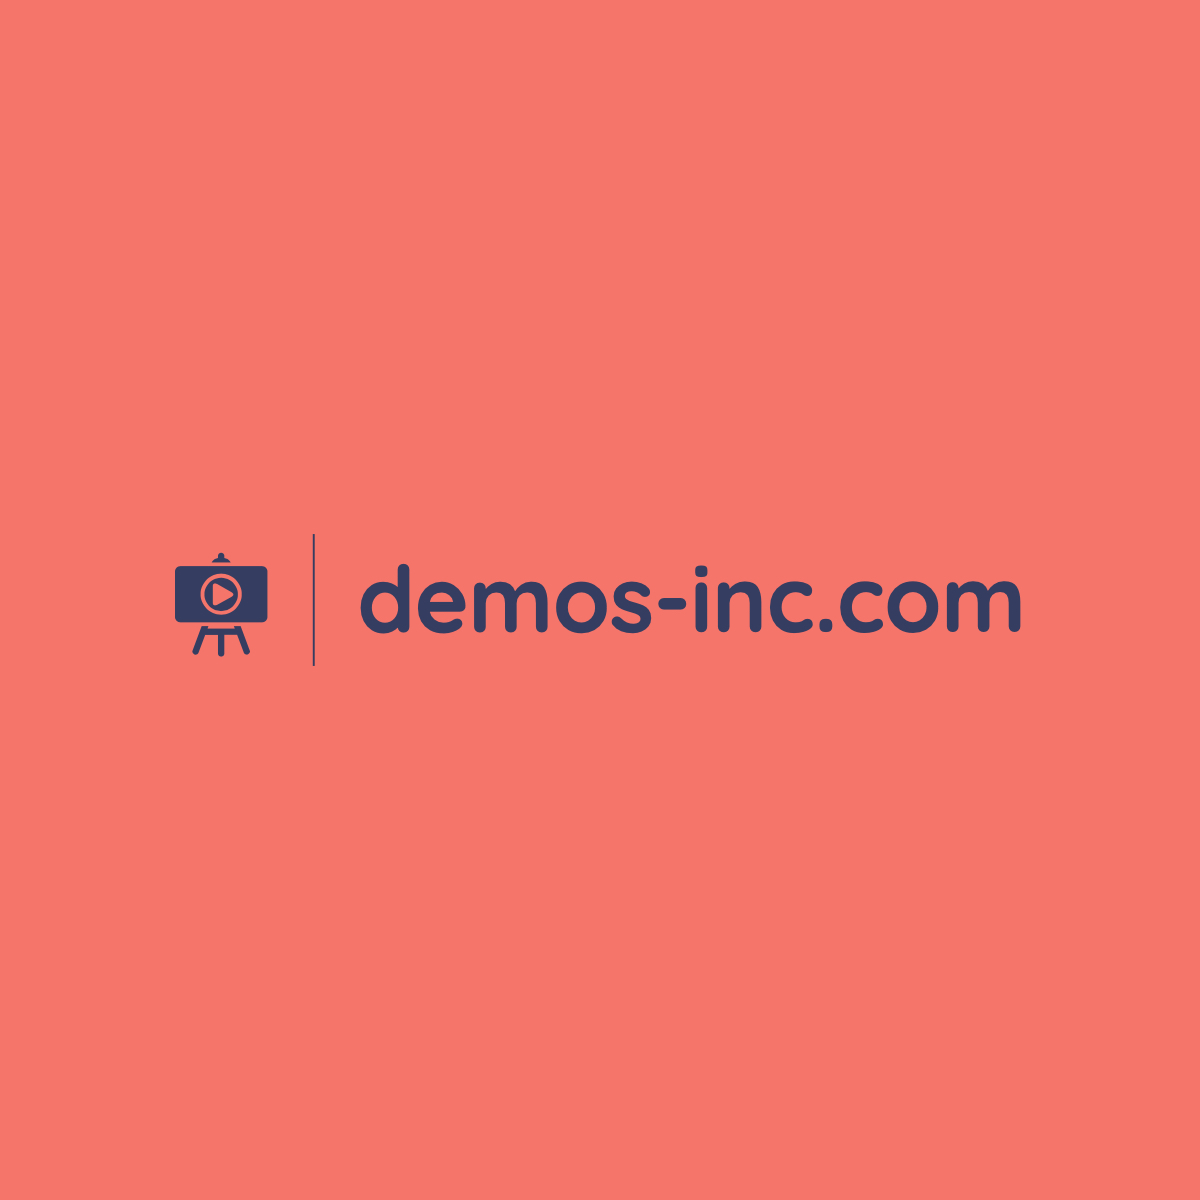 demos-inc.com logo